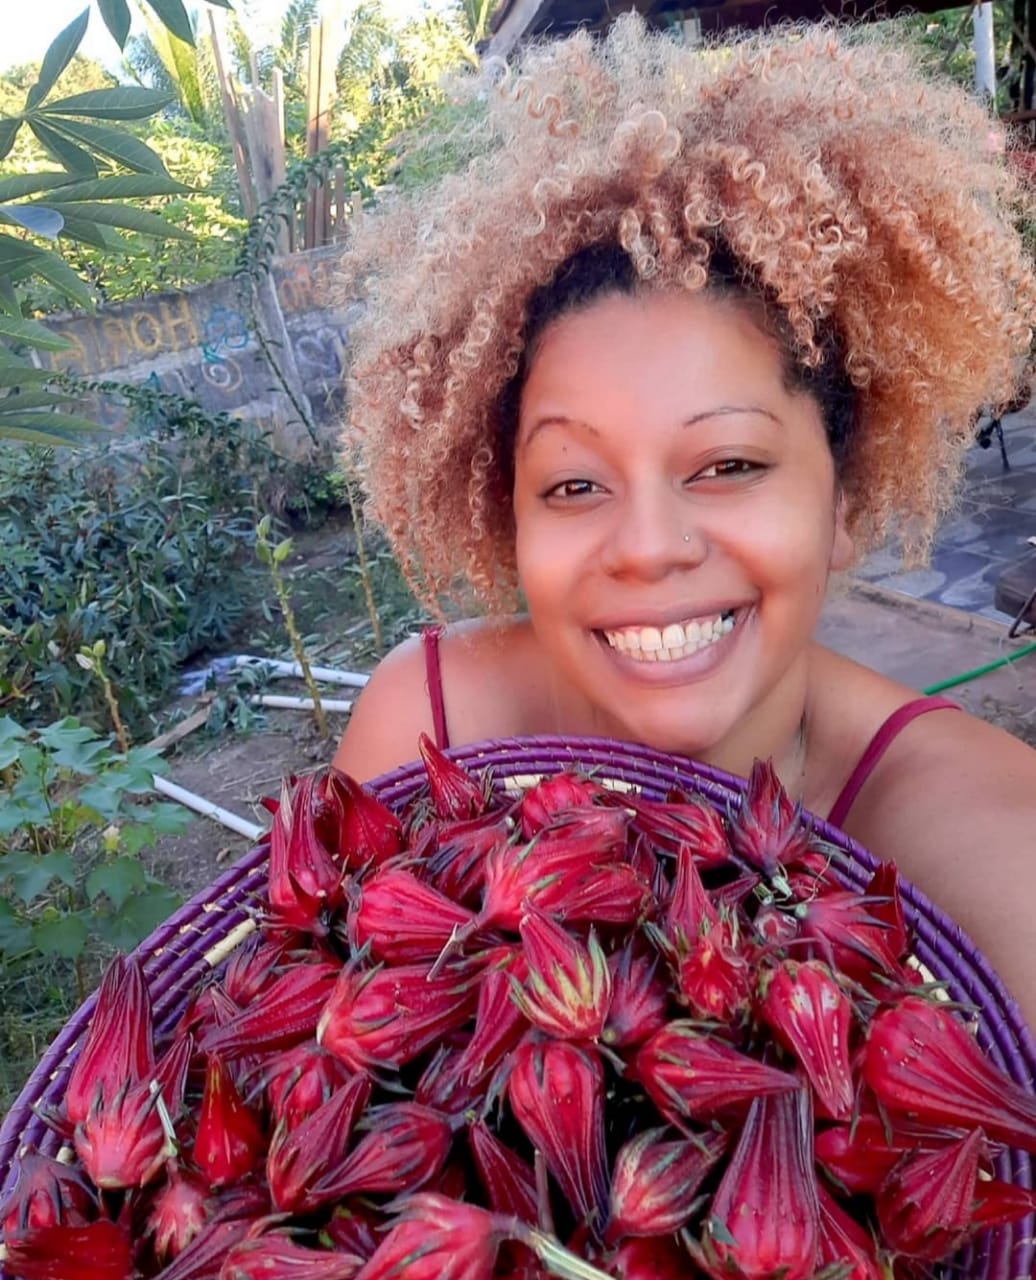 “Produzir e consumir alimentos saudáveis não pode ser um privilégio de cor”, afirma Fran Paula